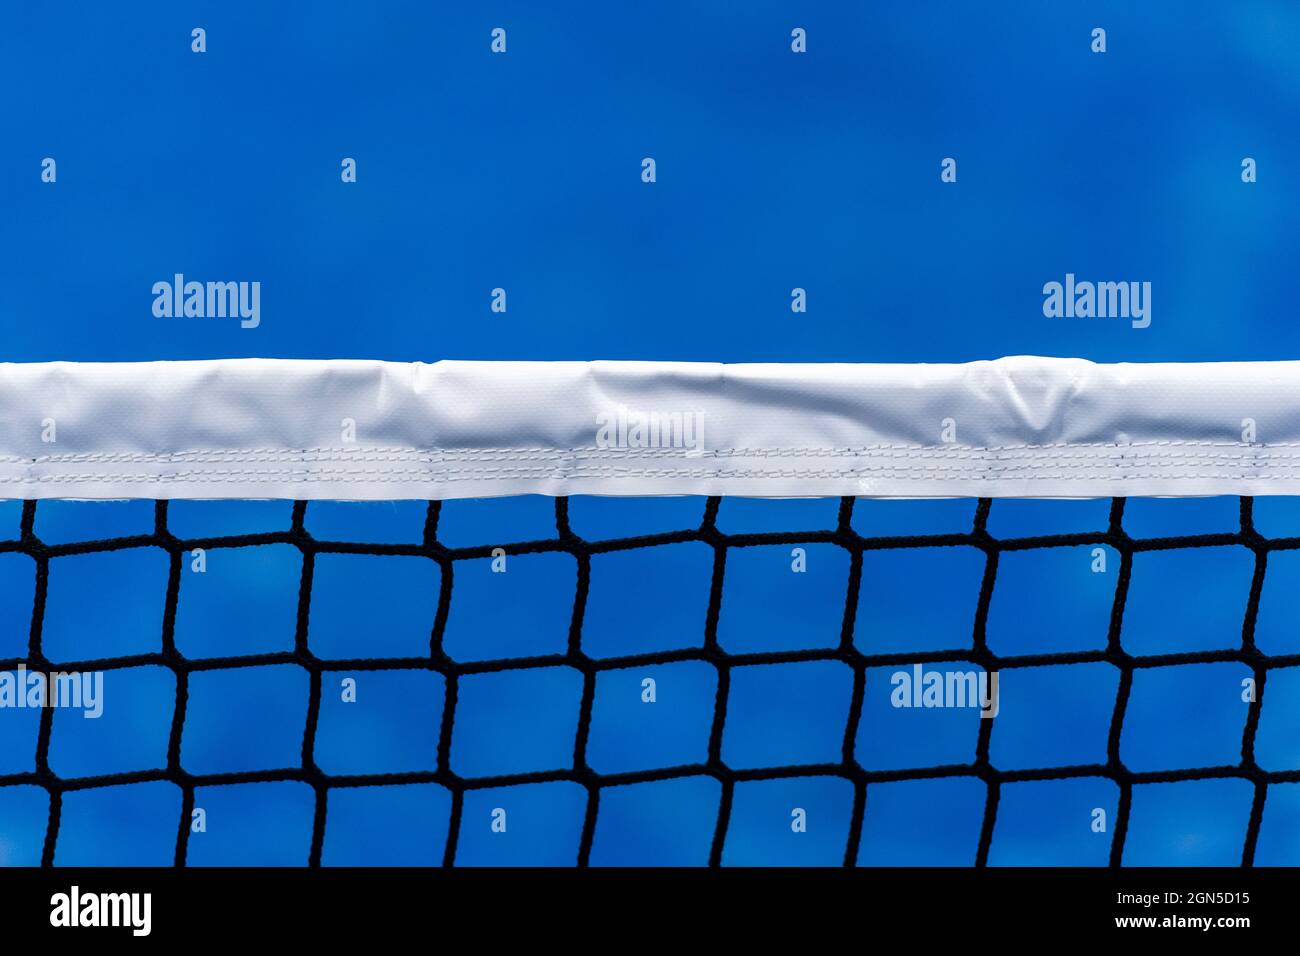 Paddle-tennis, volley-ball et filet de tennis sur terrain bleu. Concept de tennis. Affiche sport horizontale, cartes de vœux, en-têtes, site Web Banque D'Images